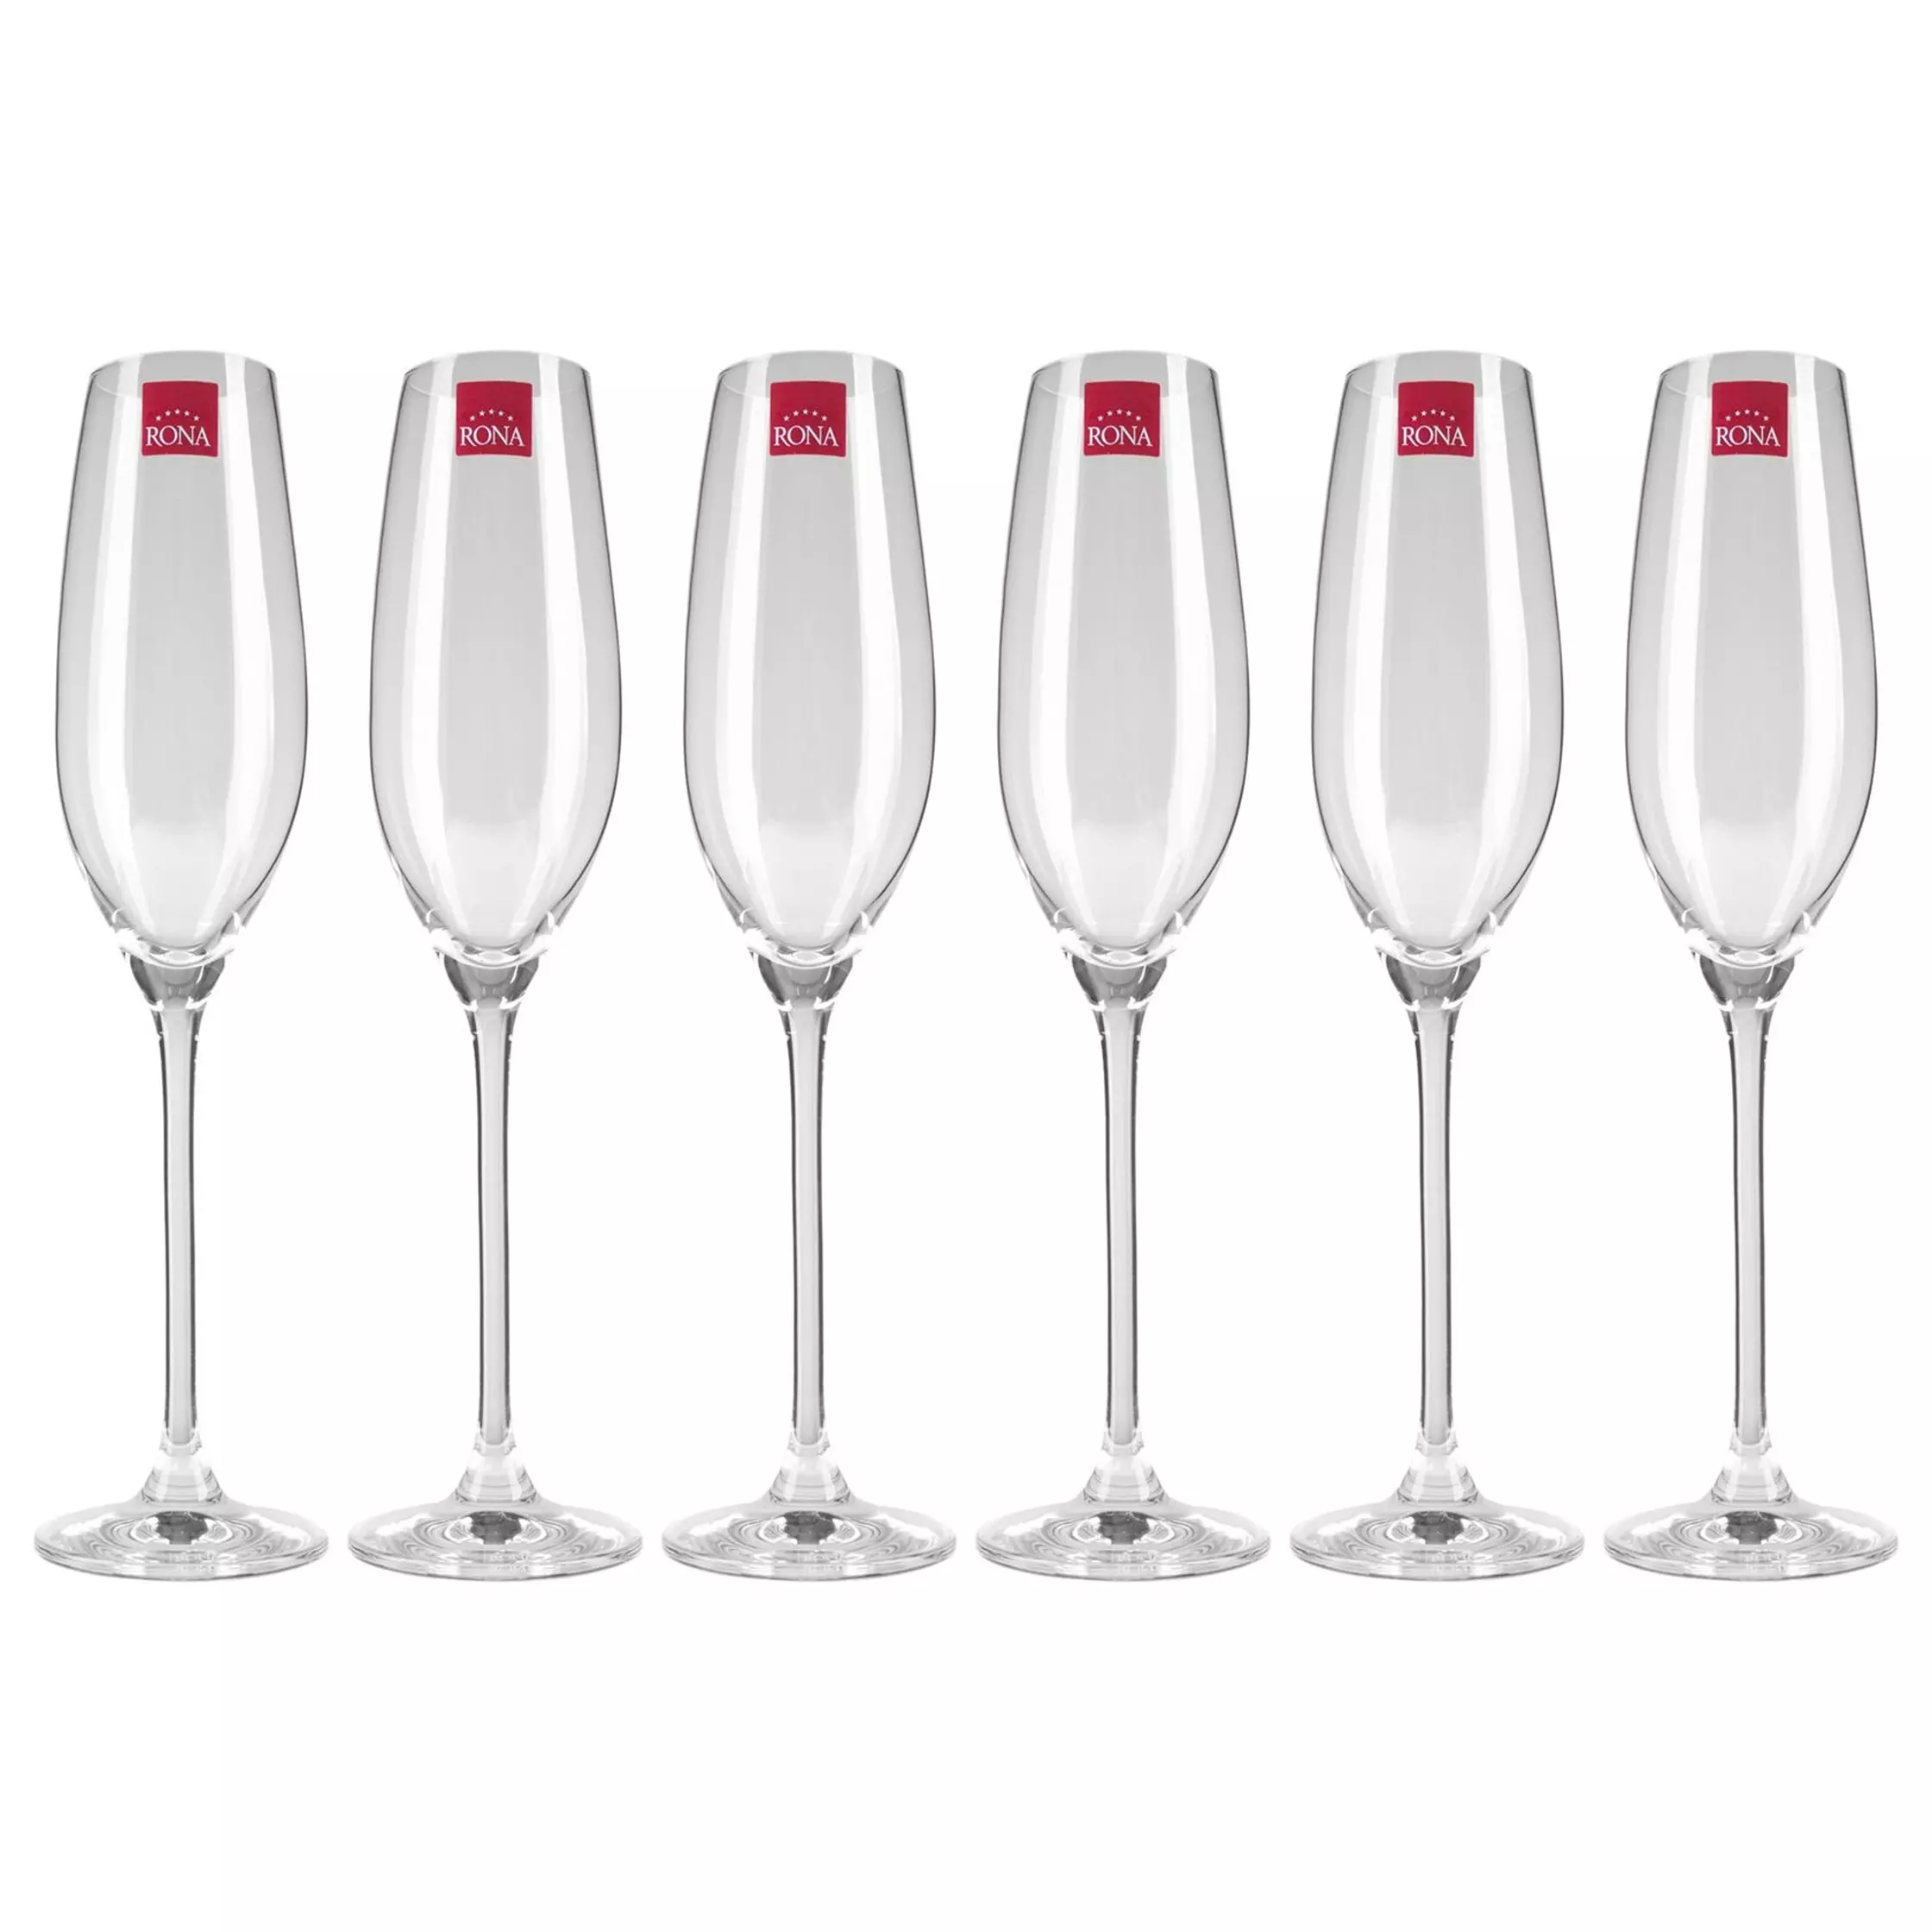 Бокалы для шампанского 210 мл 6 шт RONA Celebration 900-503